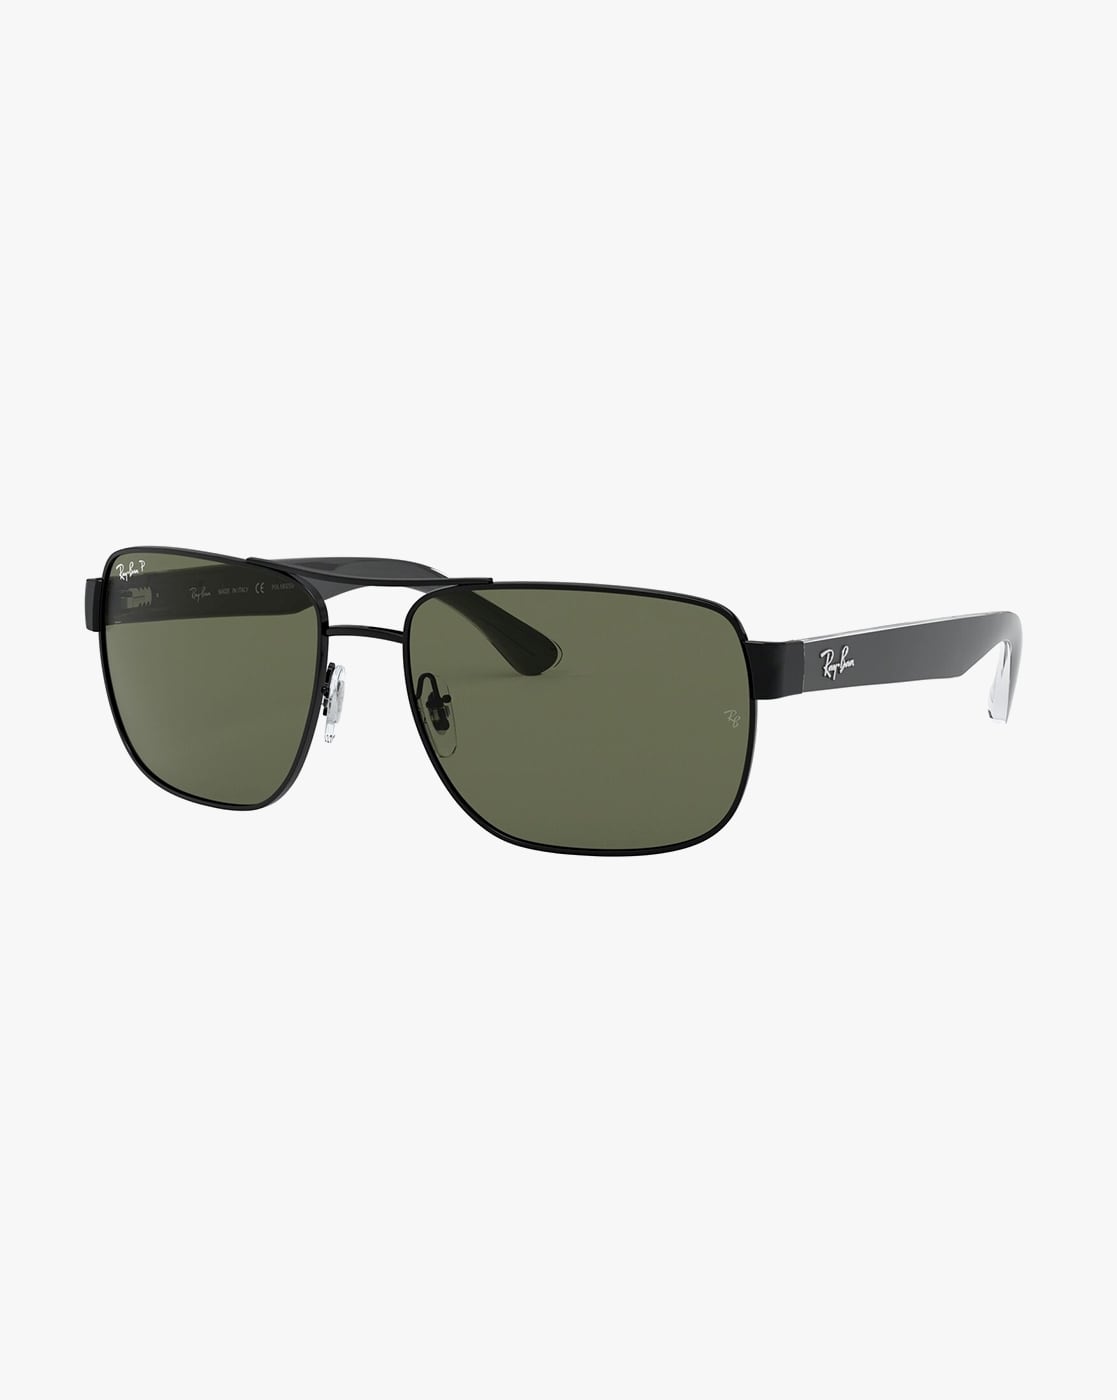 Ray-Ban Polarized Sunglasses, RB3530 - Macy's